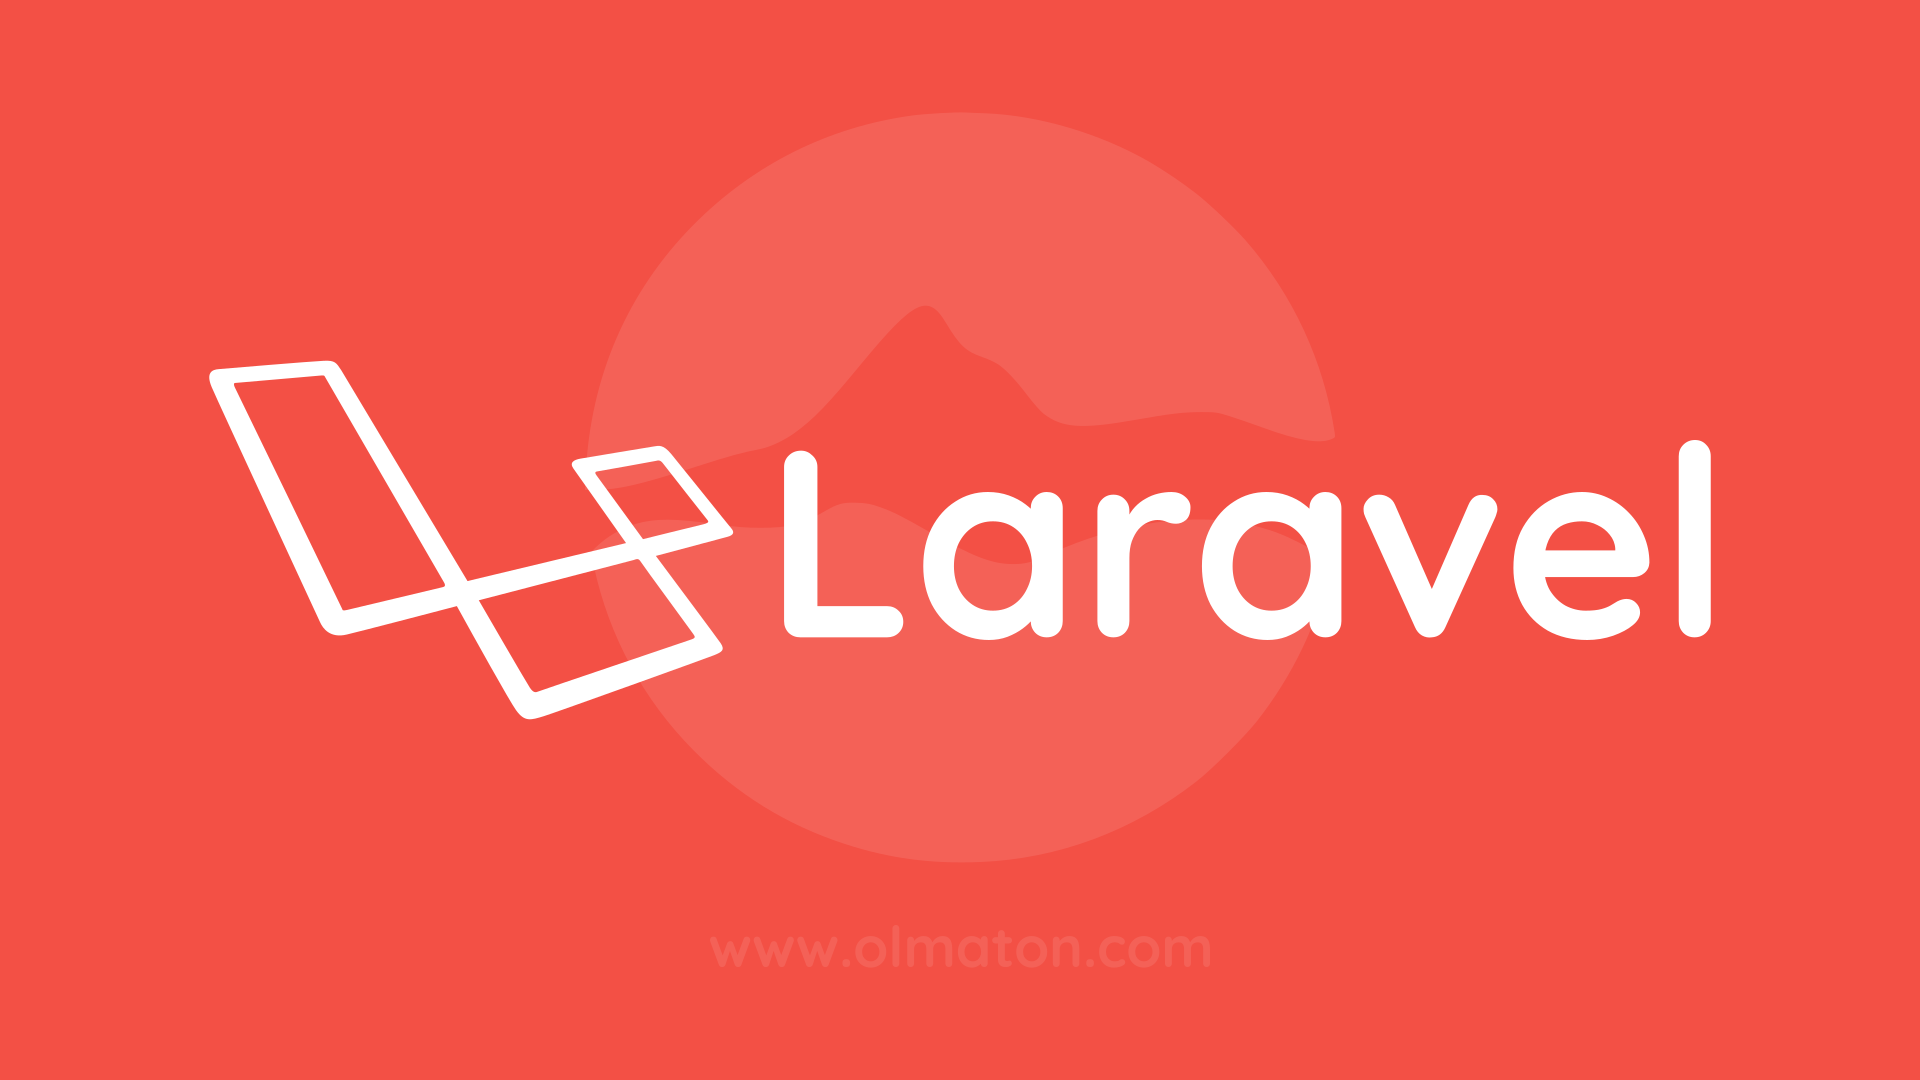 Guía y consejos prácticos sobre Laravel